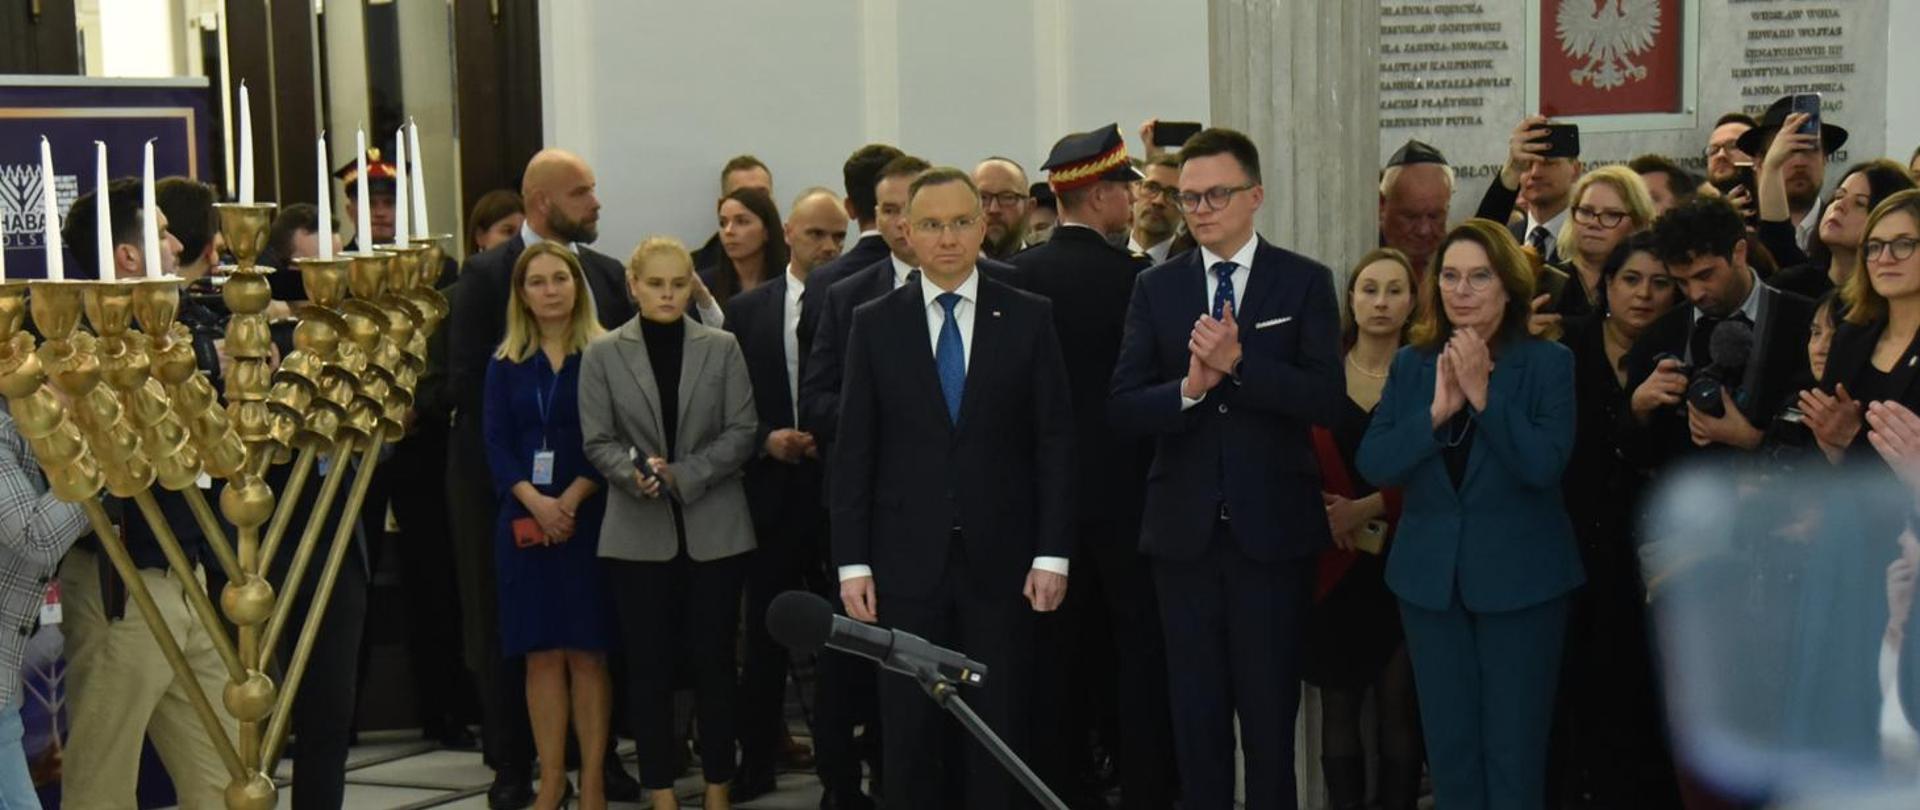 W białej sali stoi dużo ludzi, pośrodku marszałek Hołownia i prezydent Duda, przed nimi złoty dziewięcioramienny świecznik.